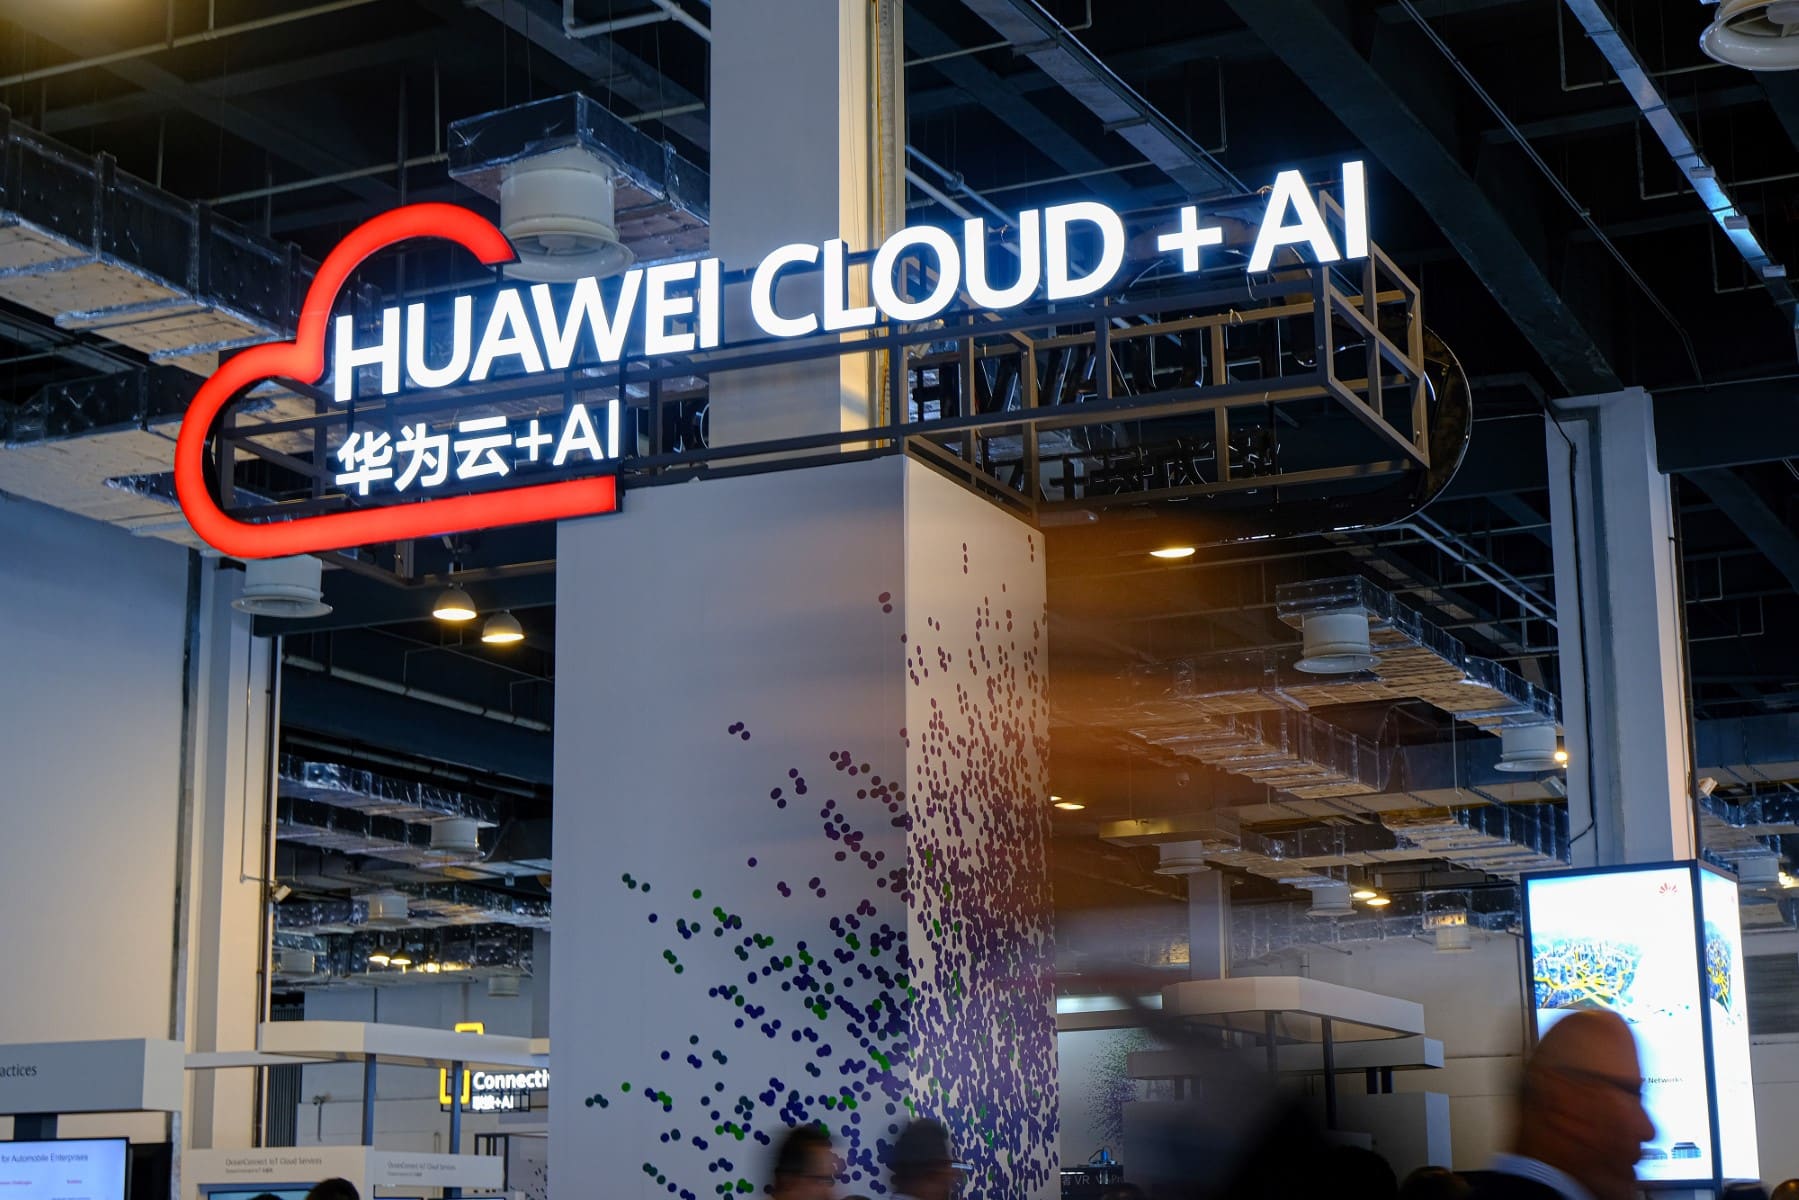 Huawei Cloud impulsa la transformación digital en la industria de Internet en Latinoamérica  “Liderando innovaciones de todo como servicio”